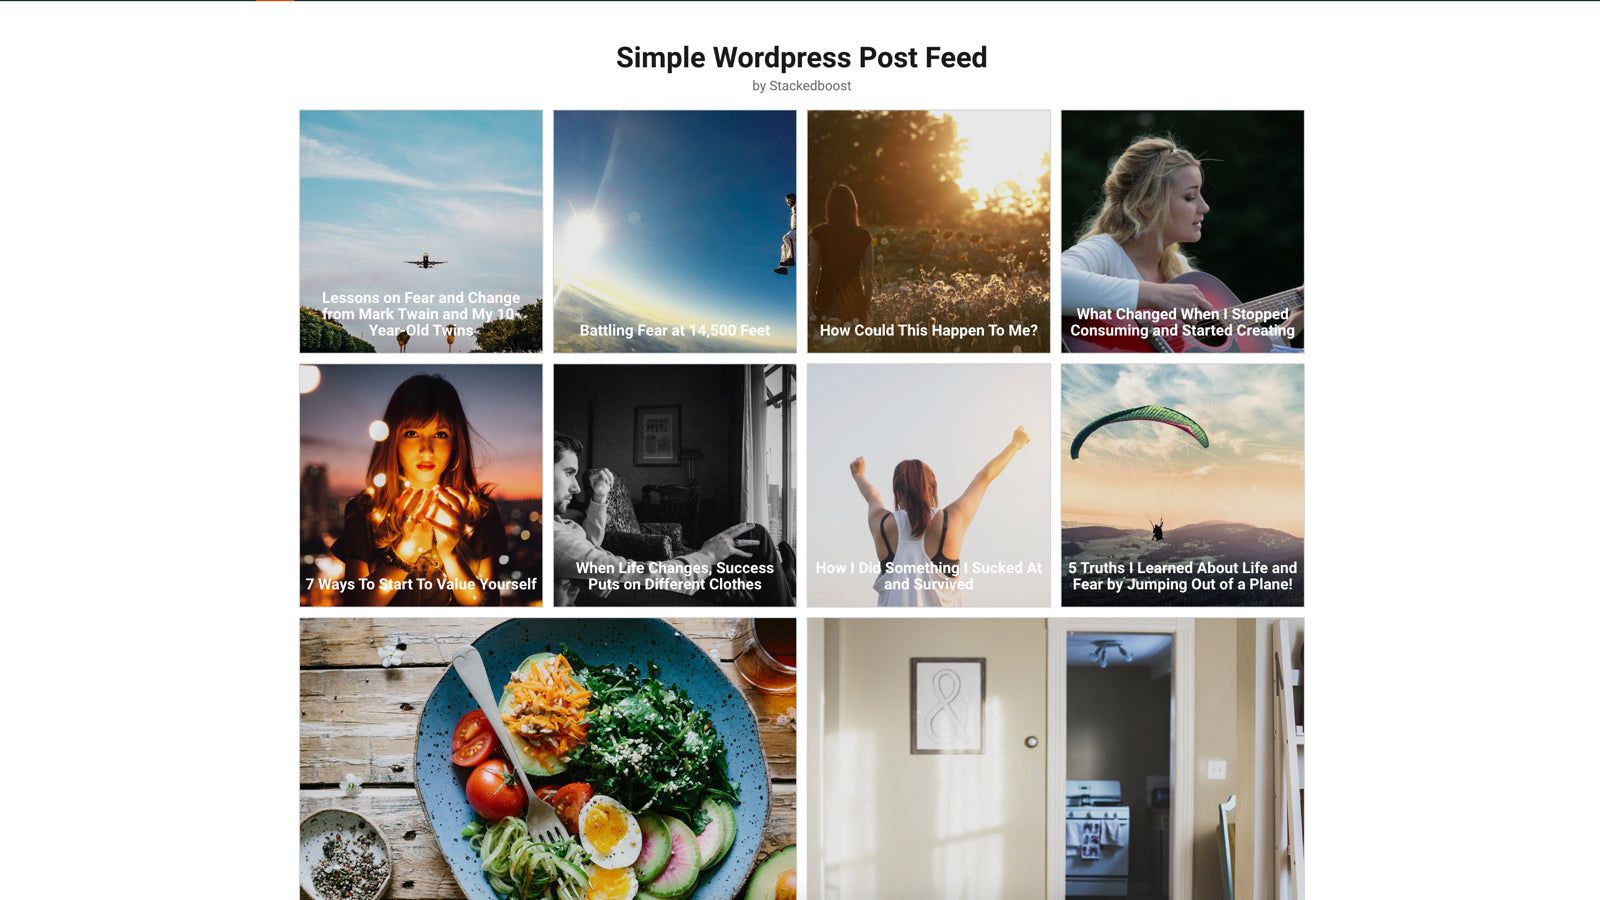 Simple Wordpress Post Feed App